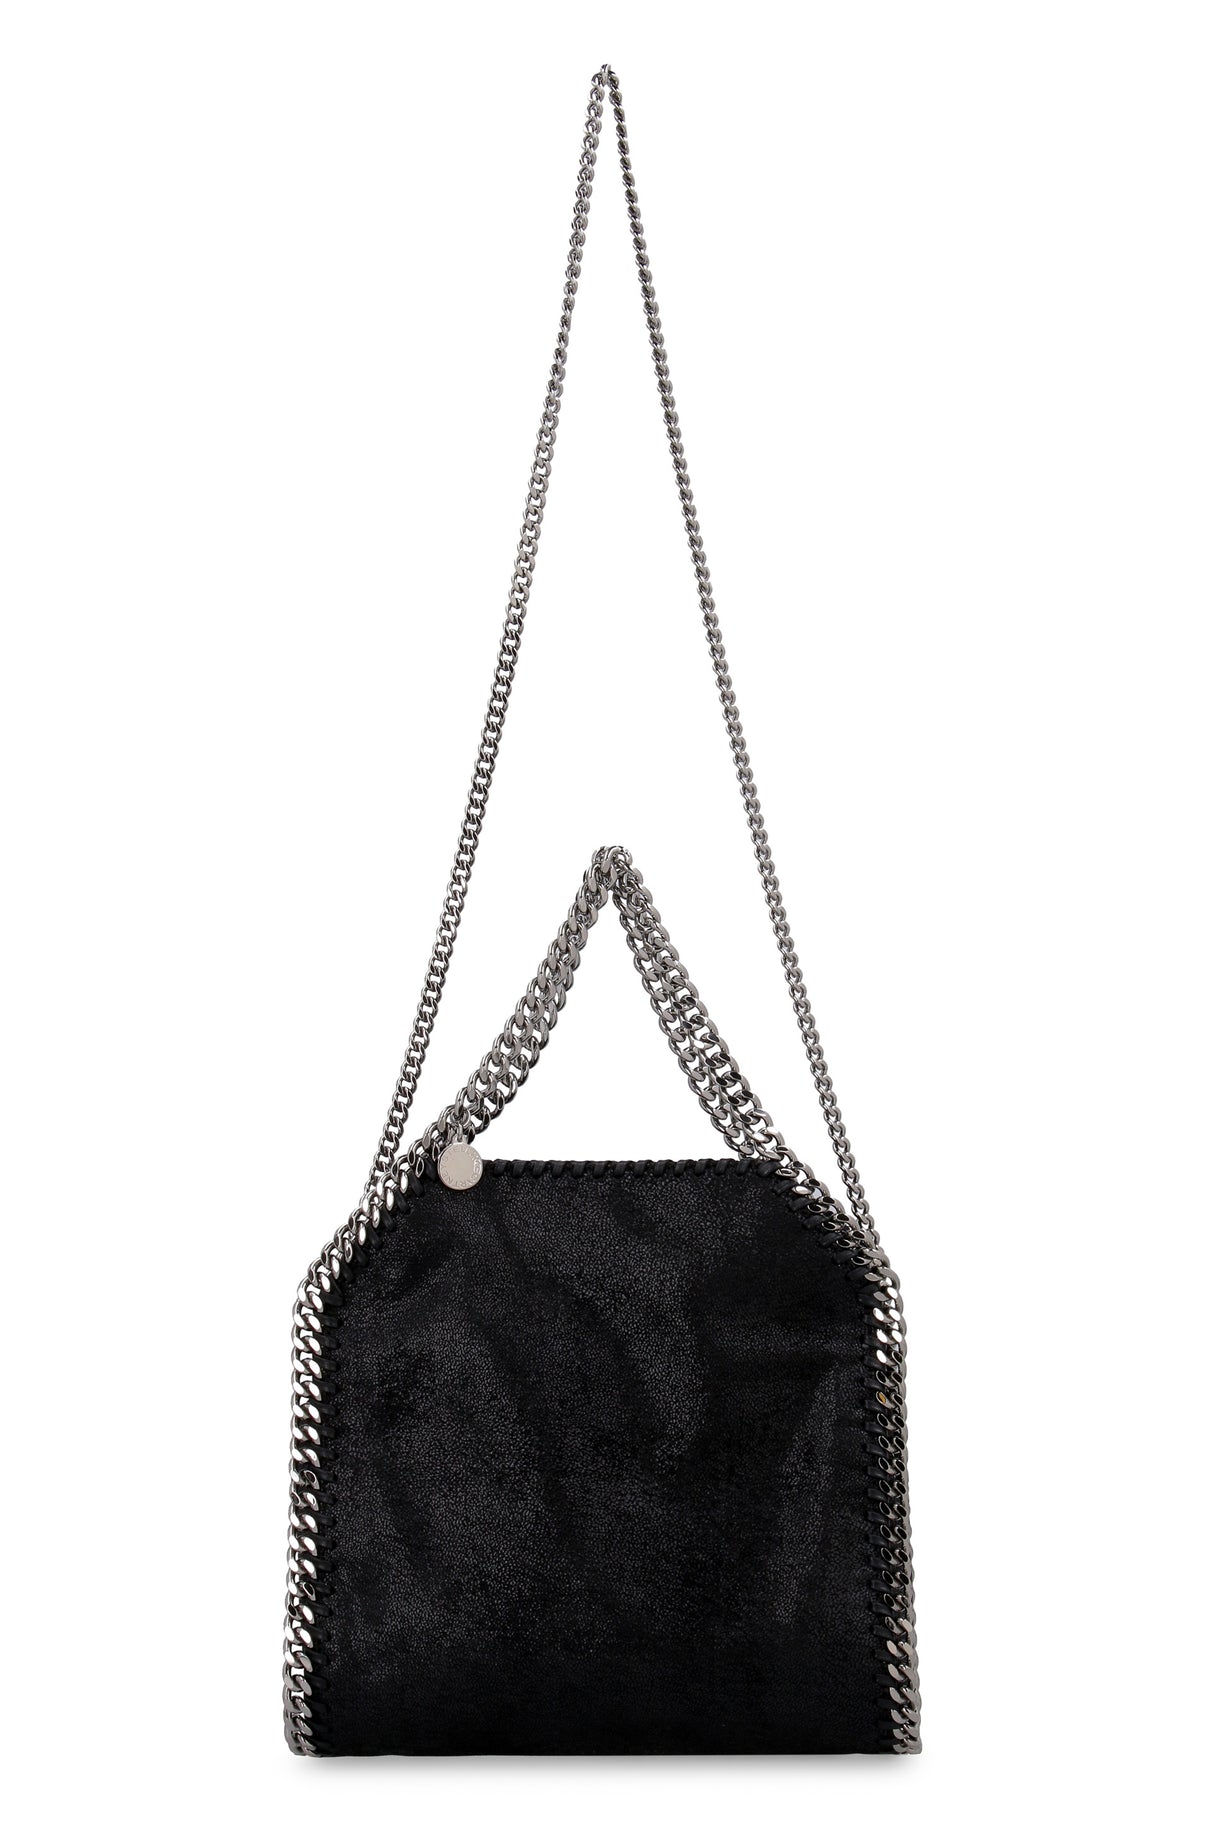 Túi xách mini Stella McCartney màu đen